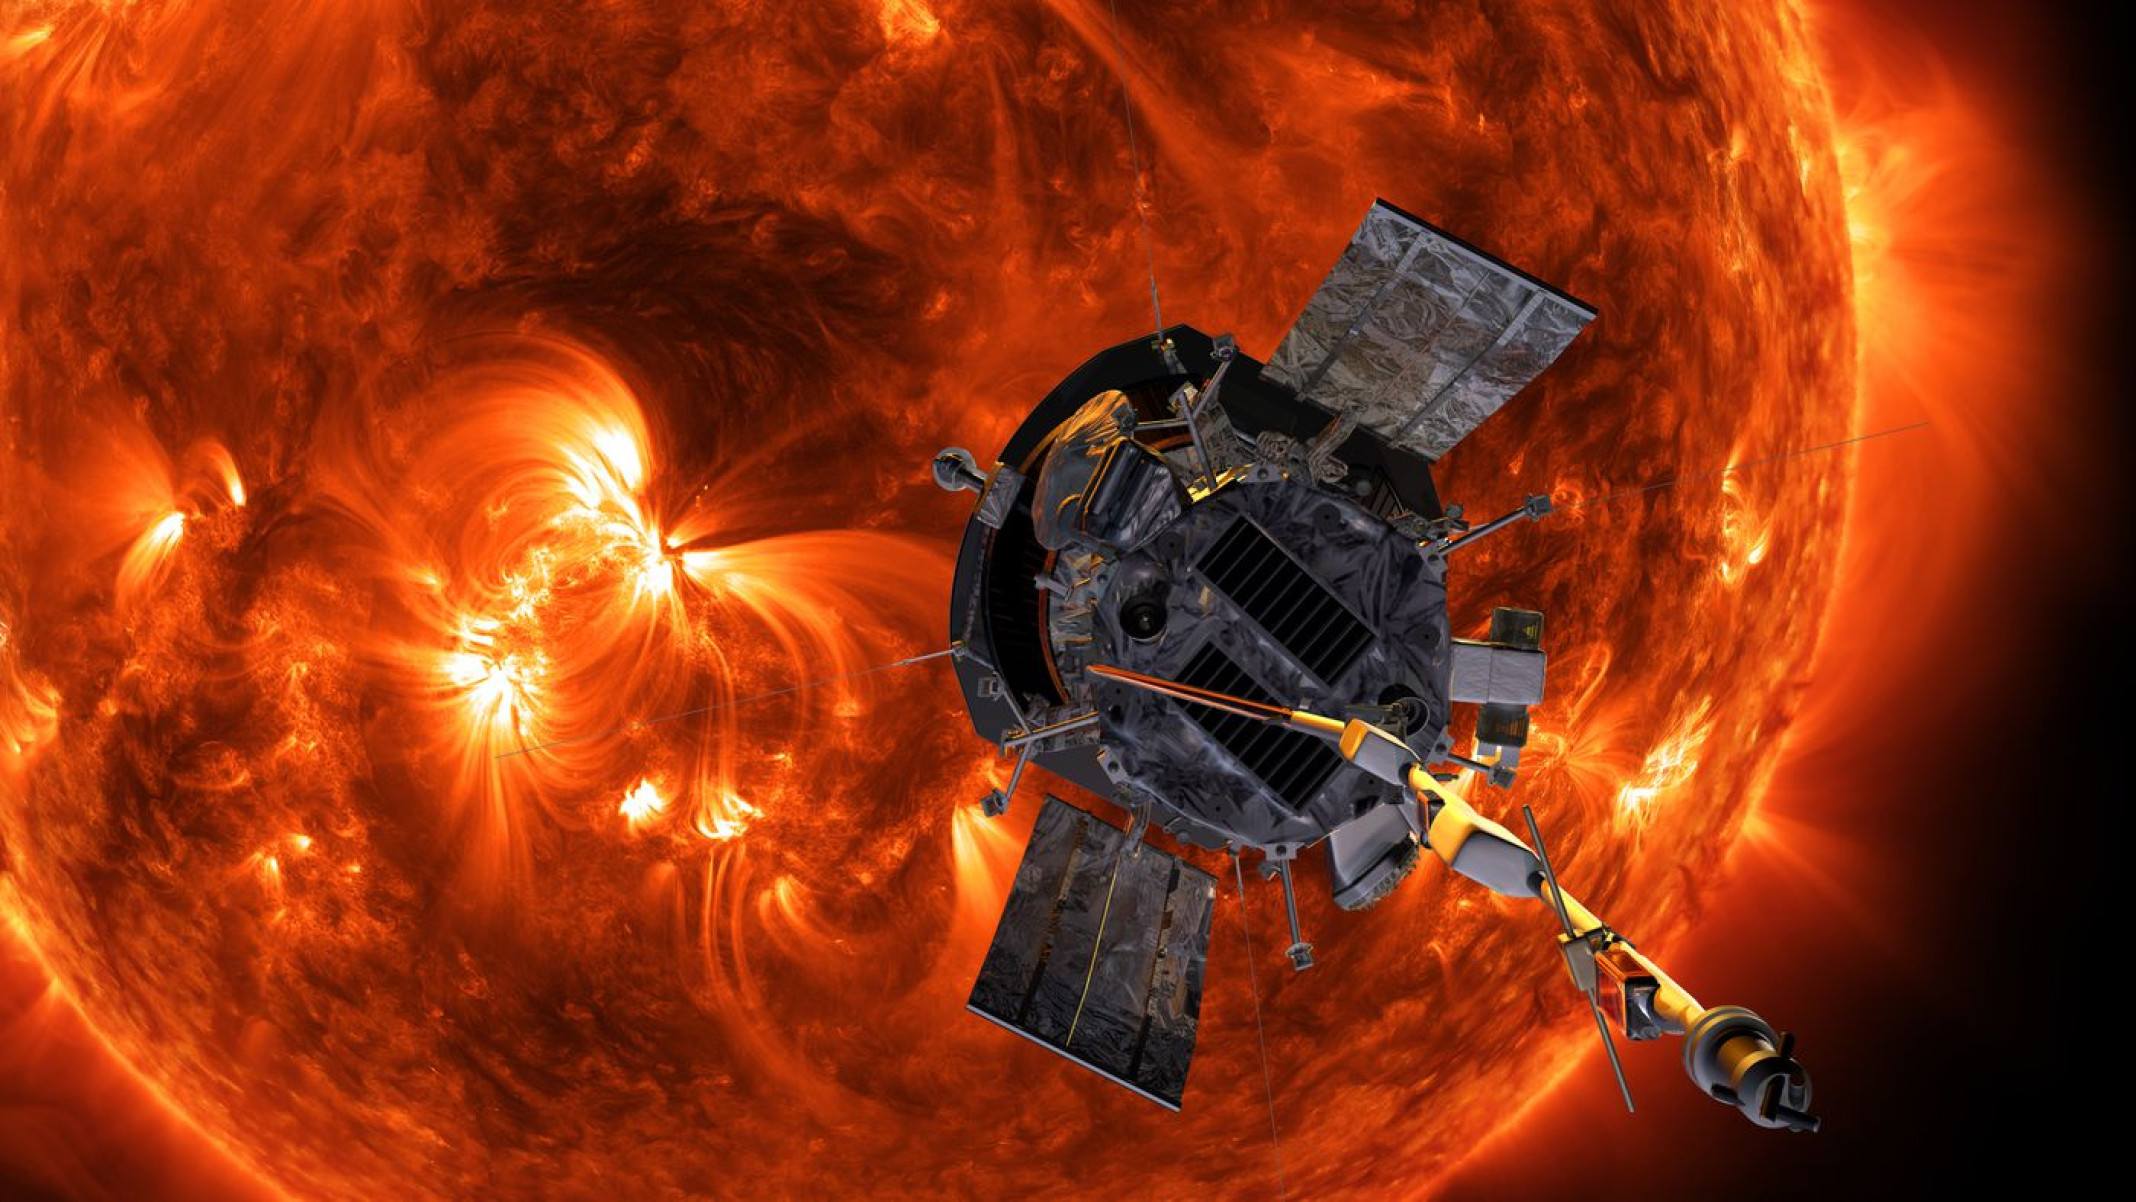 Sonda Parker completa 95% do percurso até o Sol e passa bem, diz NASA